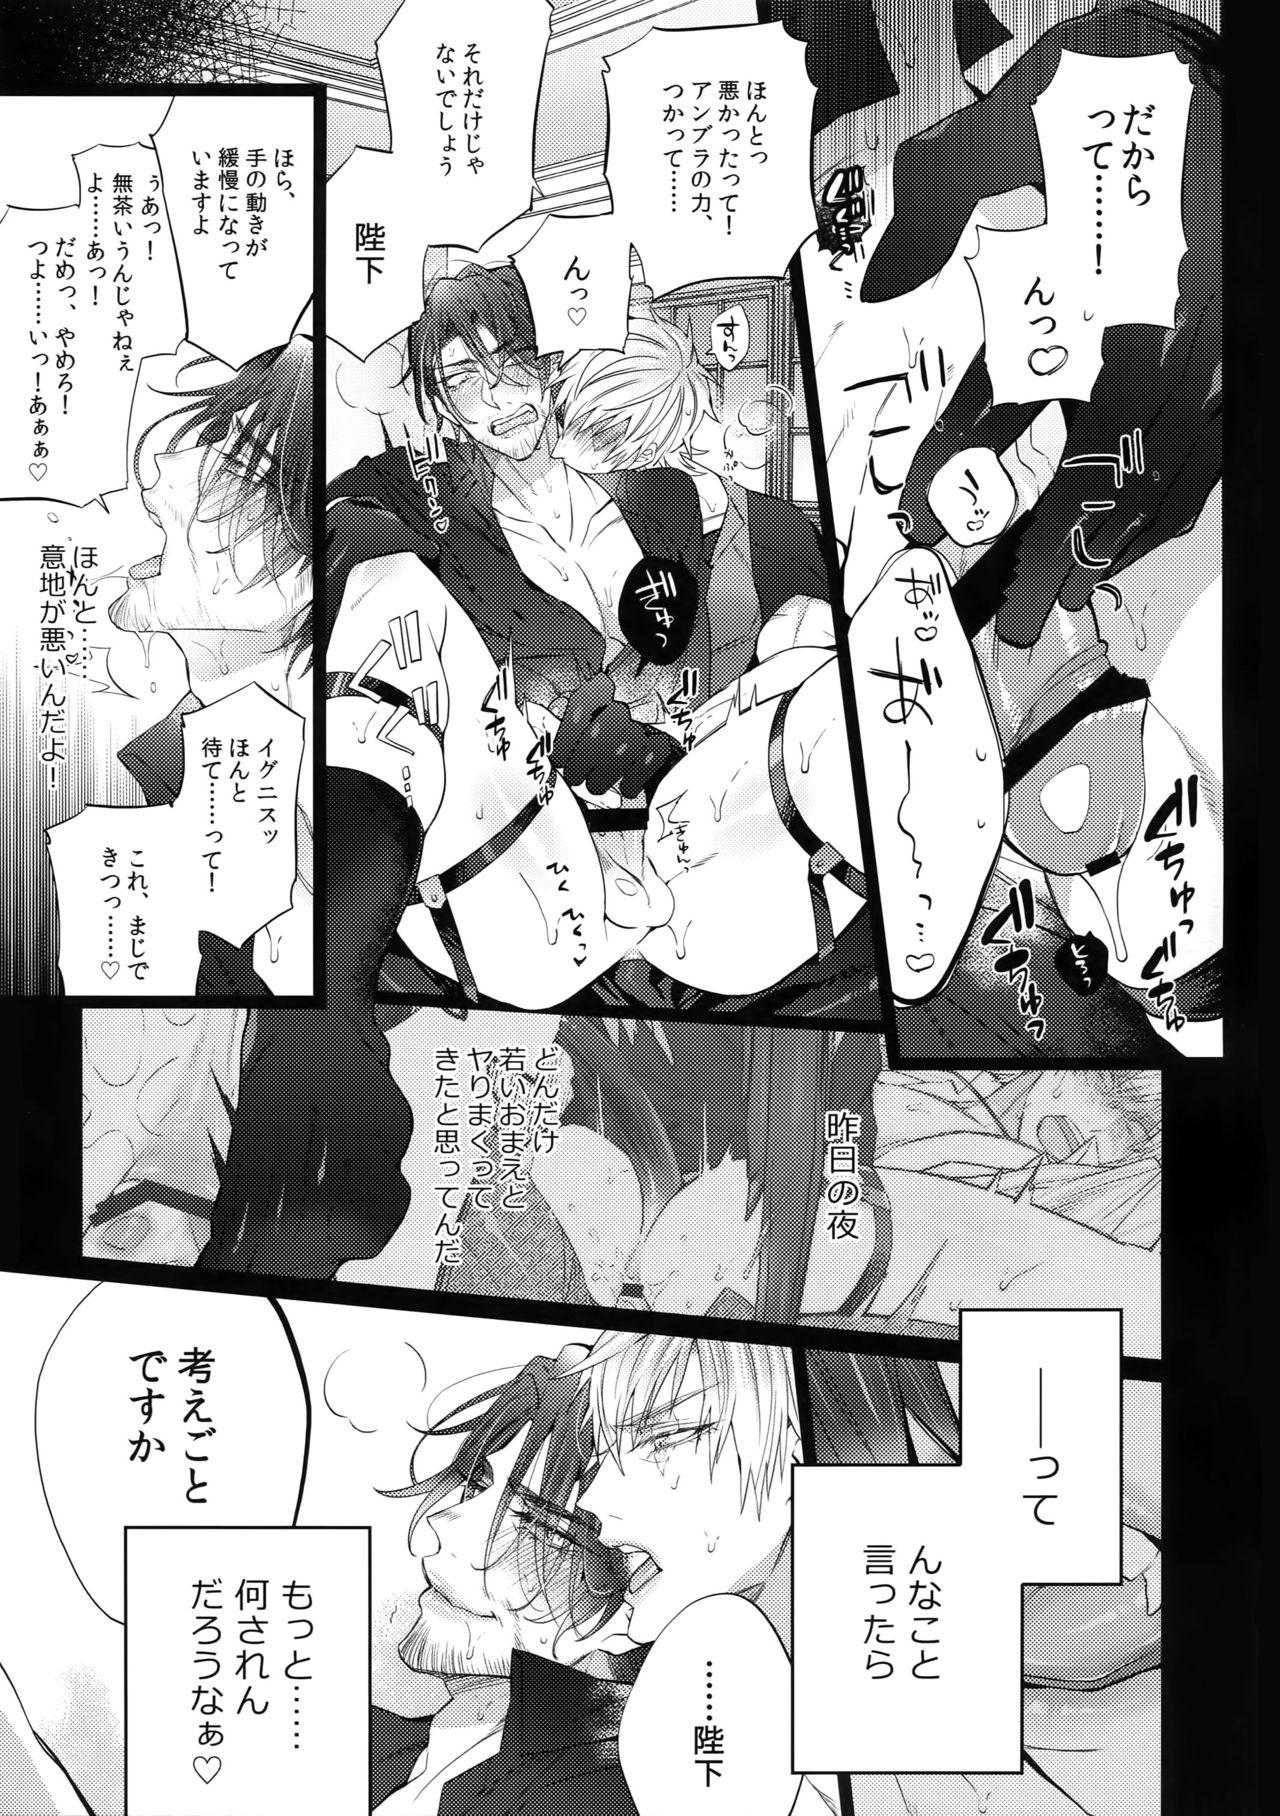 Licking AKUMA DE SOUROU! ITO OKASHI - Final fantasy xv Lips - Page 8